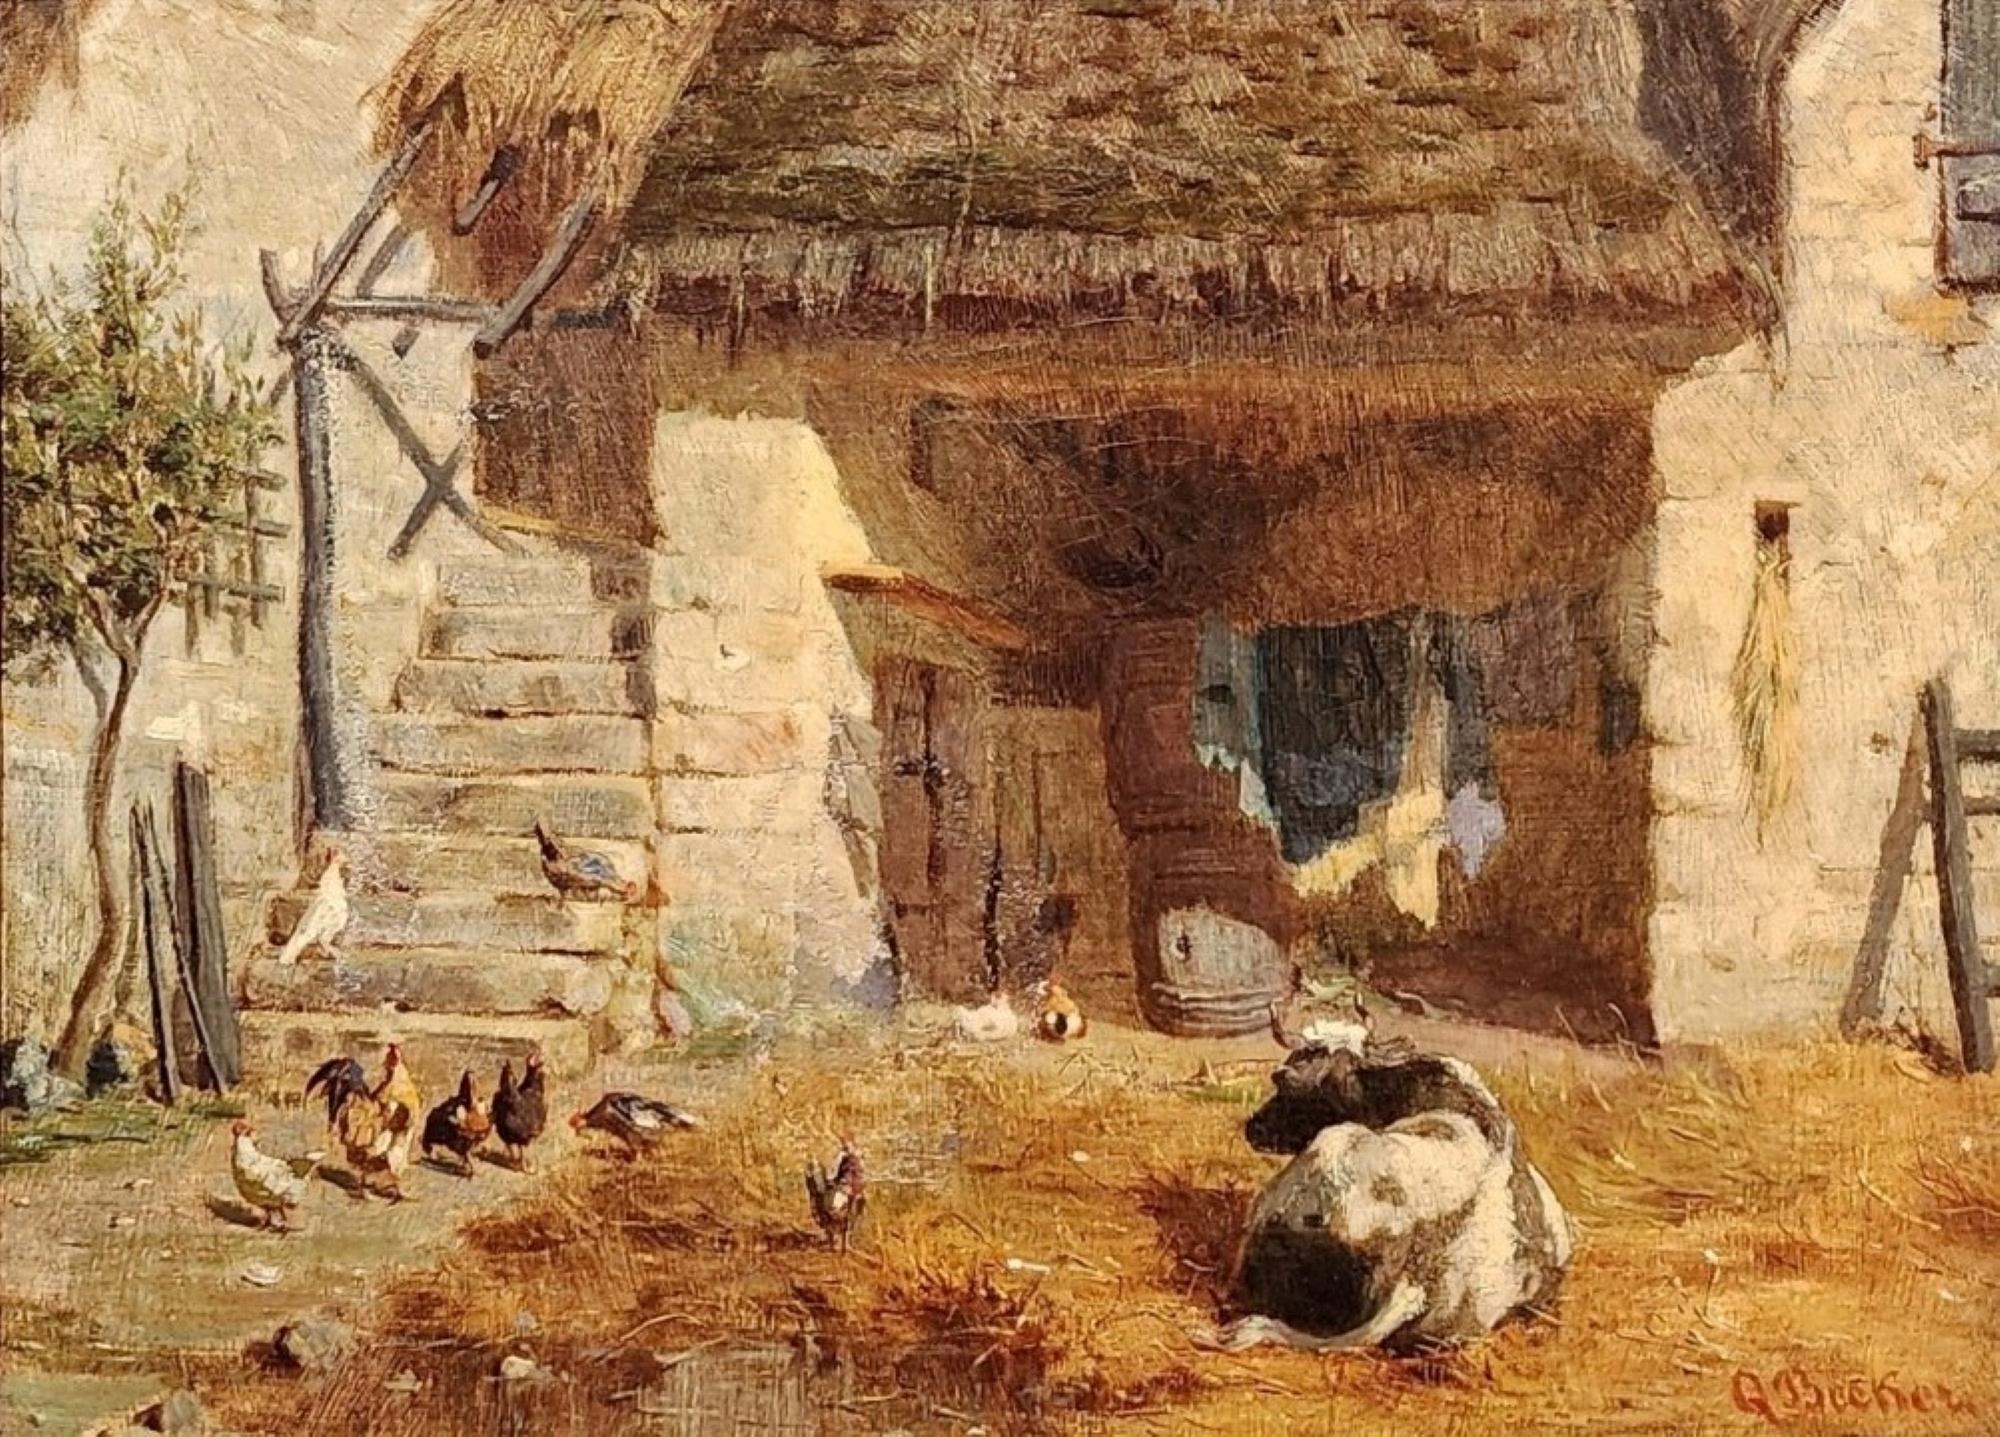 In The Barnyard, Bauernhofszene des späten 19. Jahrhunderts, Kühe, Hühner – Painting von Albert Q. Becker